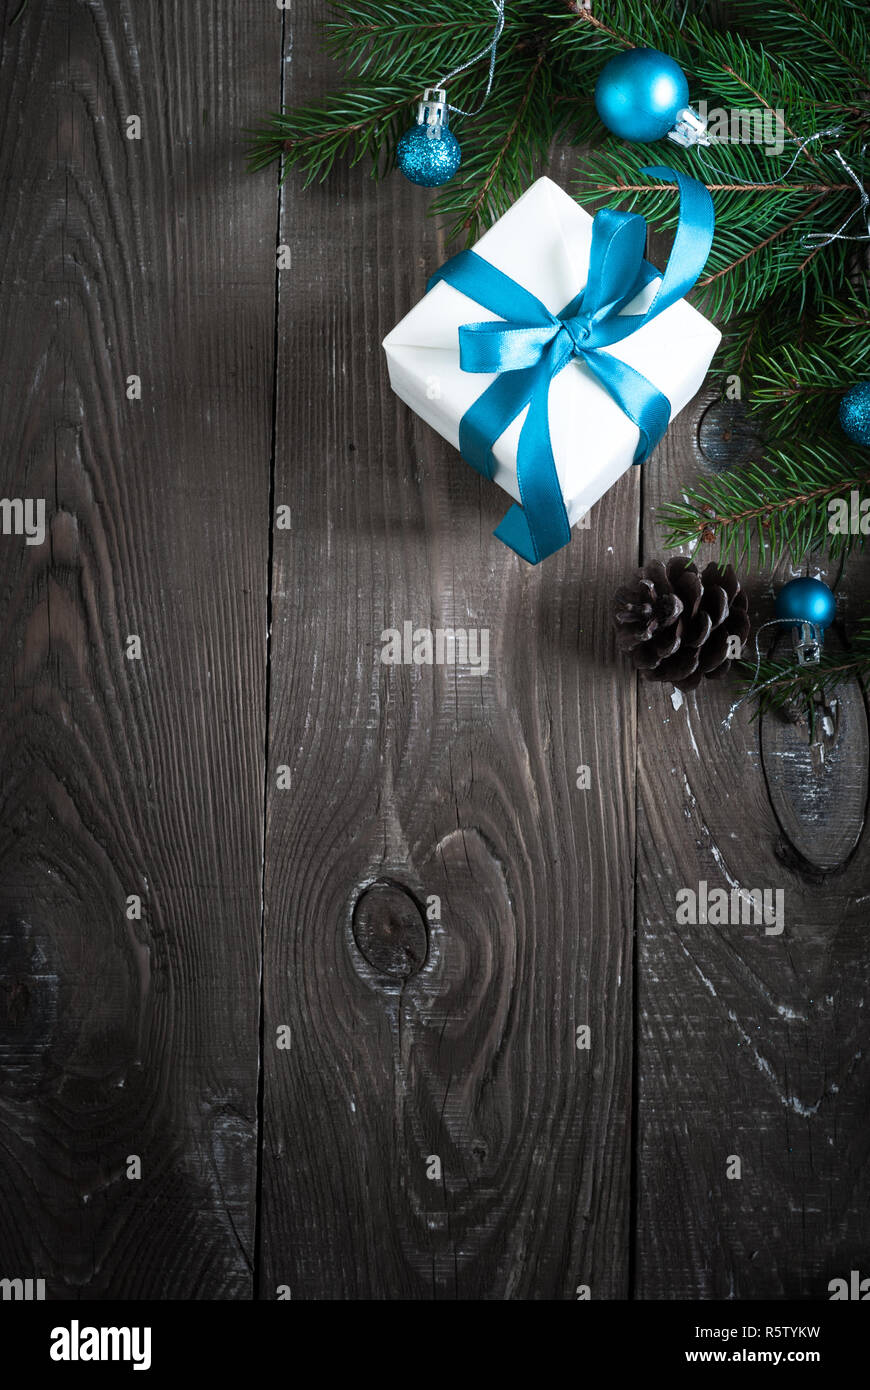 Weihnachten Geschenk box Dekorationen Fir Tree Branch Stockfoto